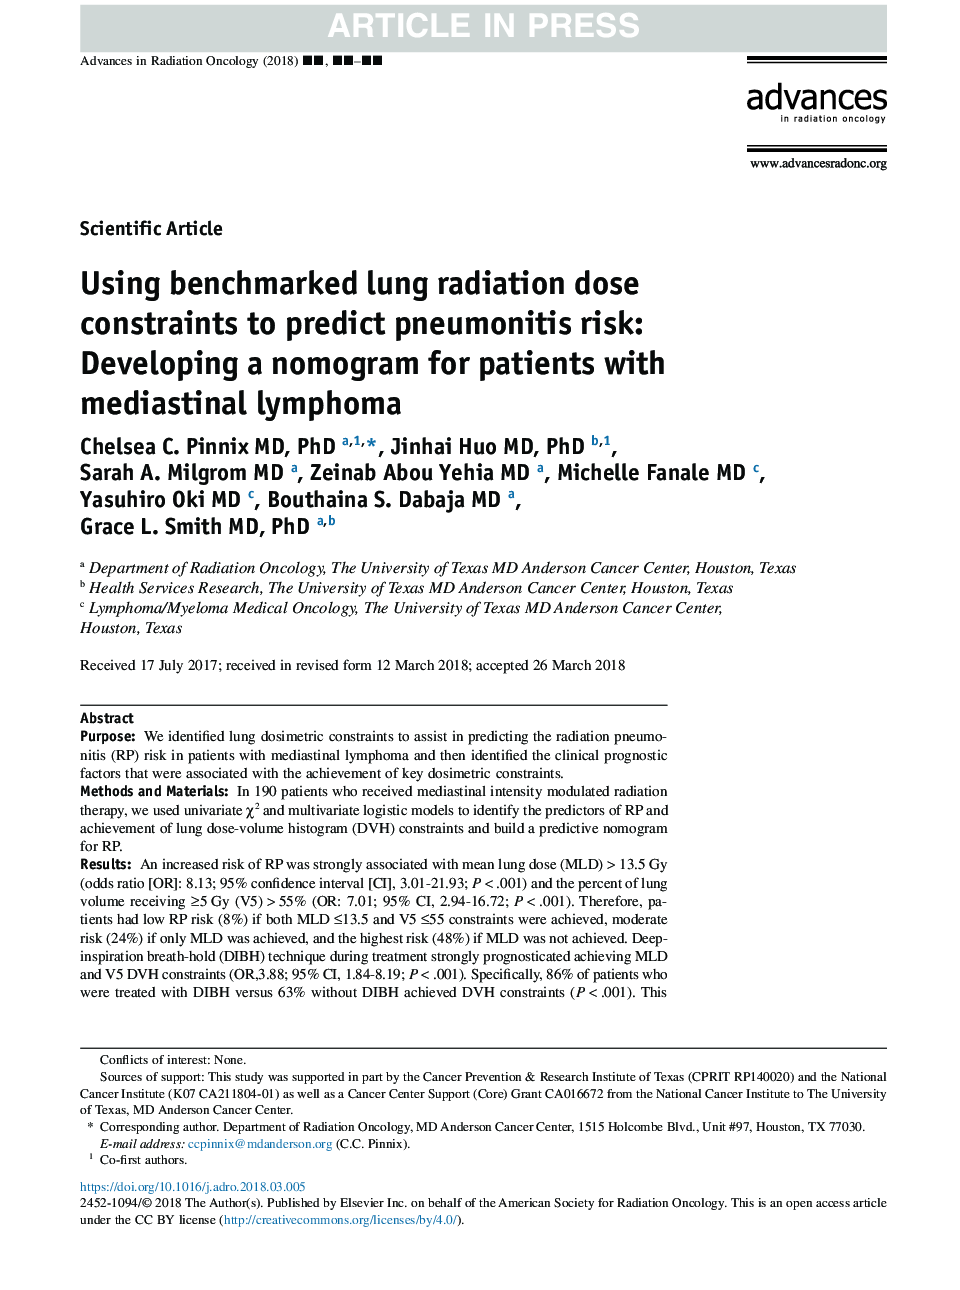 با استفاده از محدودیت های دوز تابشی ریه نسبت به پیش بینی پنومونیت خطر: توسعه نوموگرافی برای بیماران مبتلا به لنفوم مدیاستن 